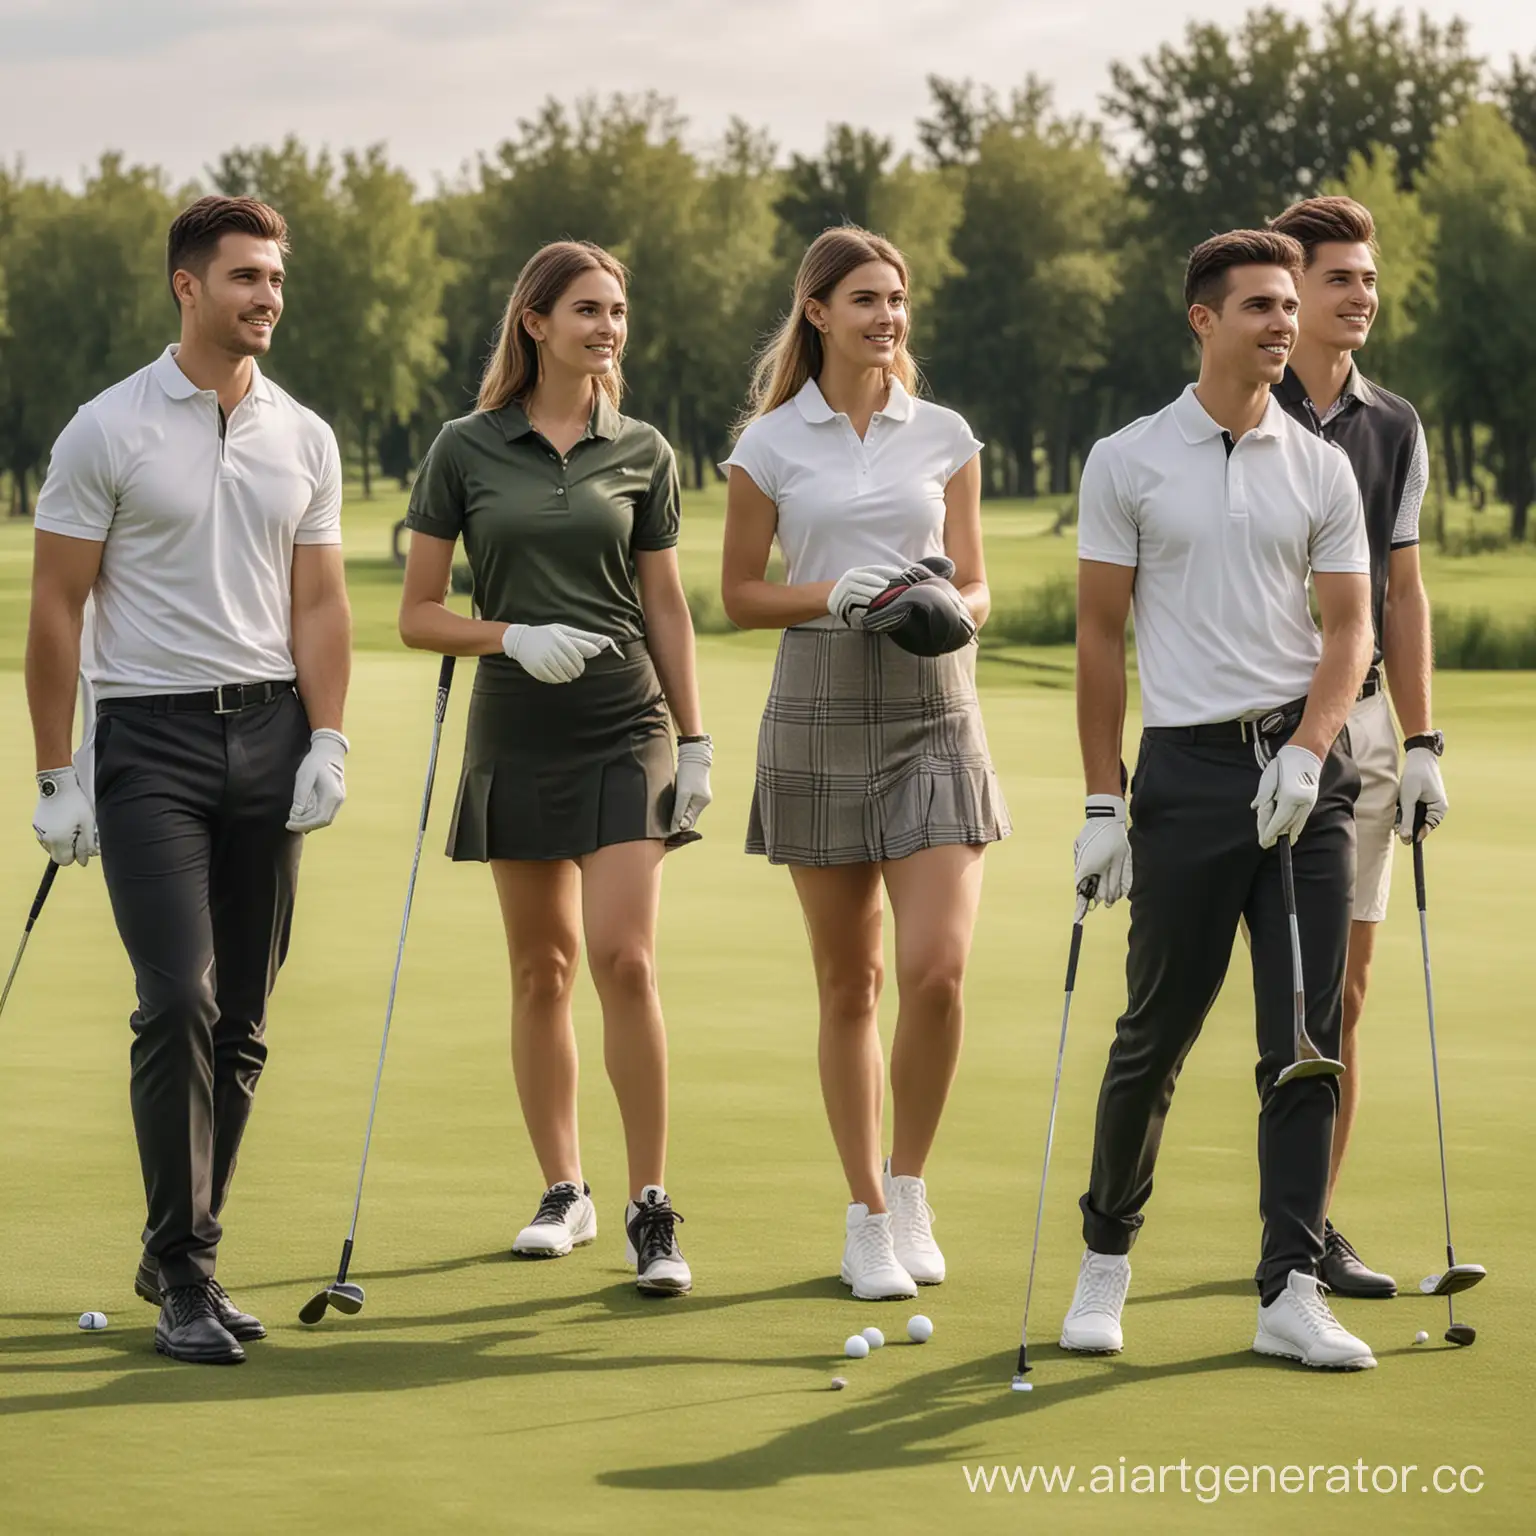 Реальное фото богатых молодых людей играющих в гольф на поле. 